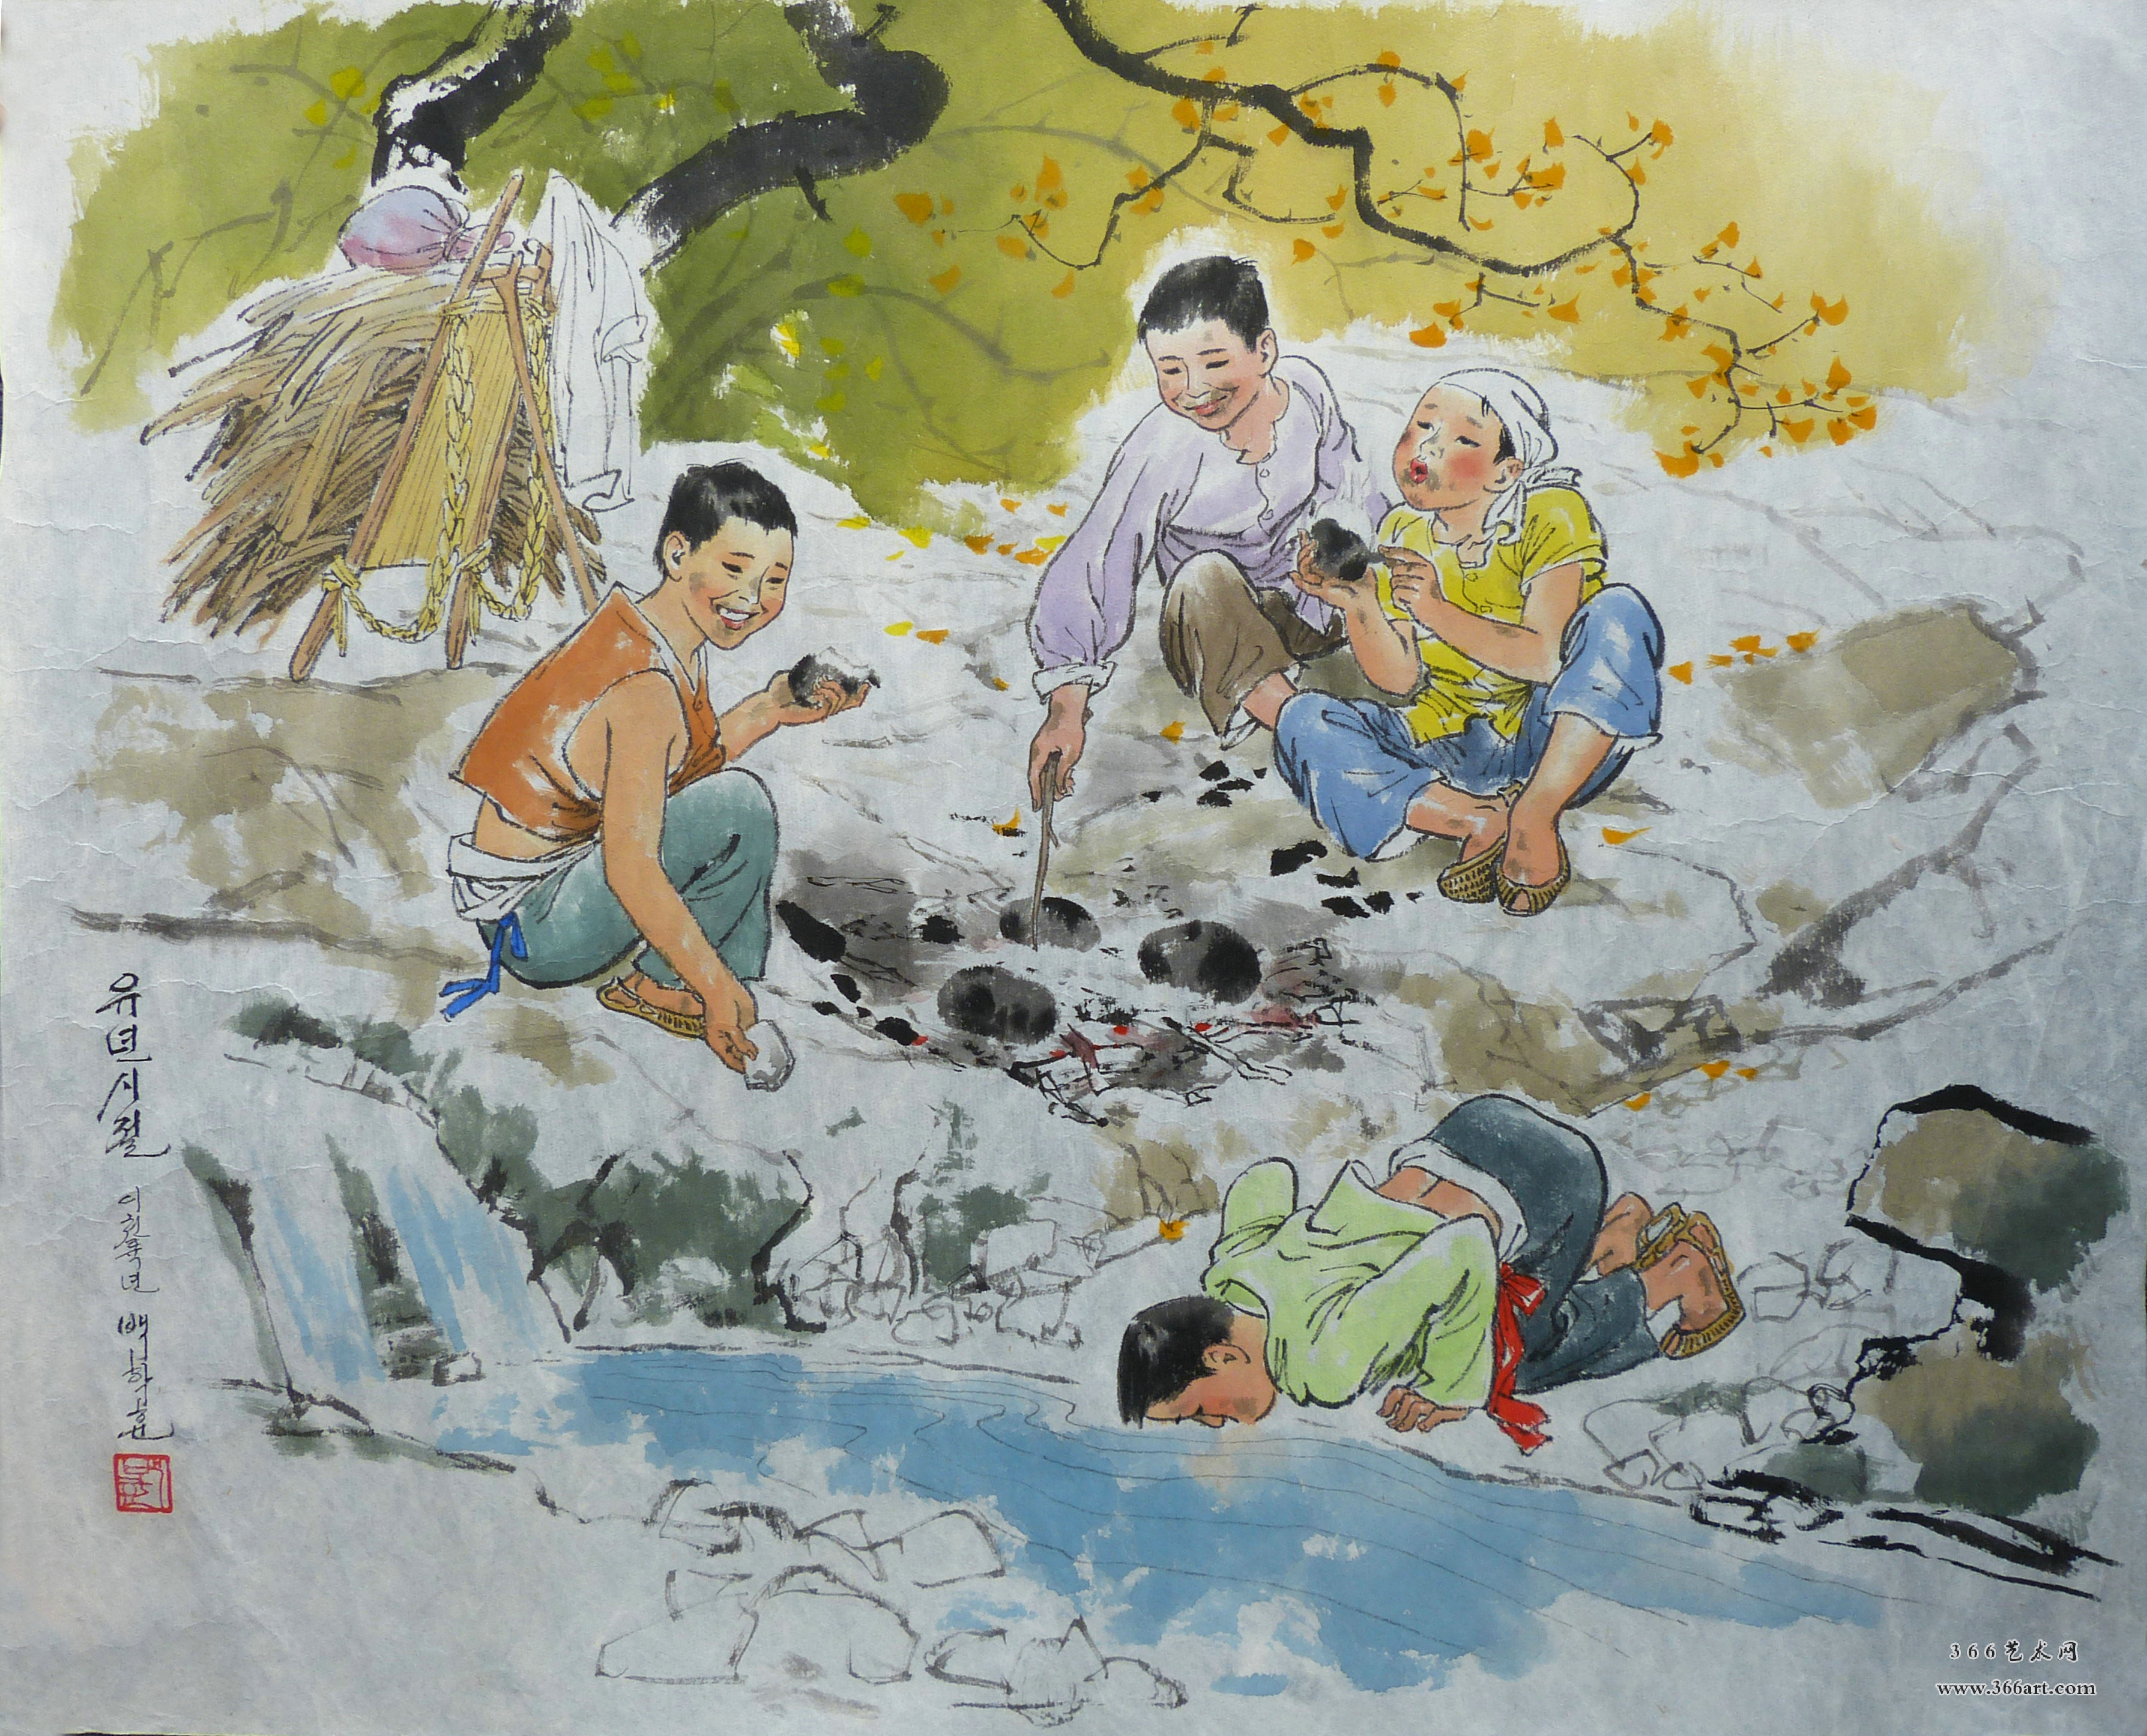 【朝鲜画】白学勋 烤土豆 2006年 79 x 55cm